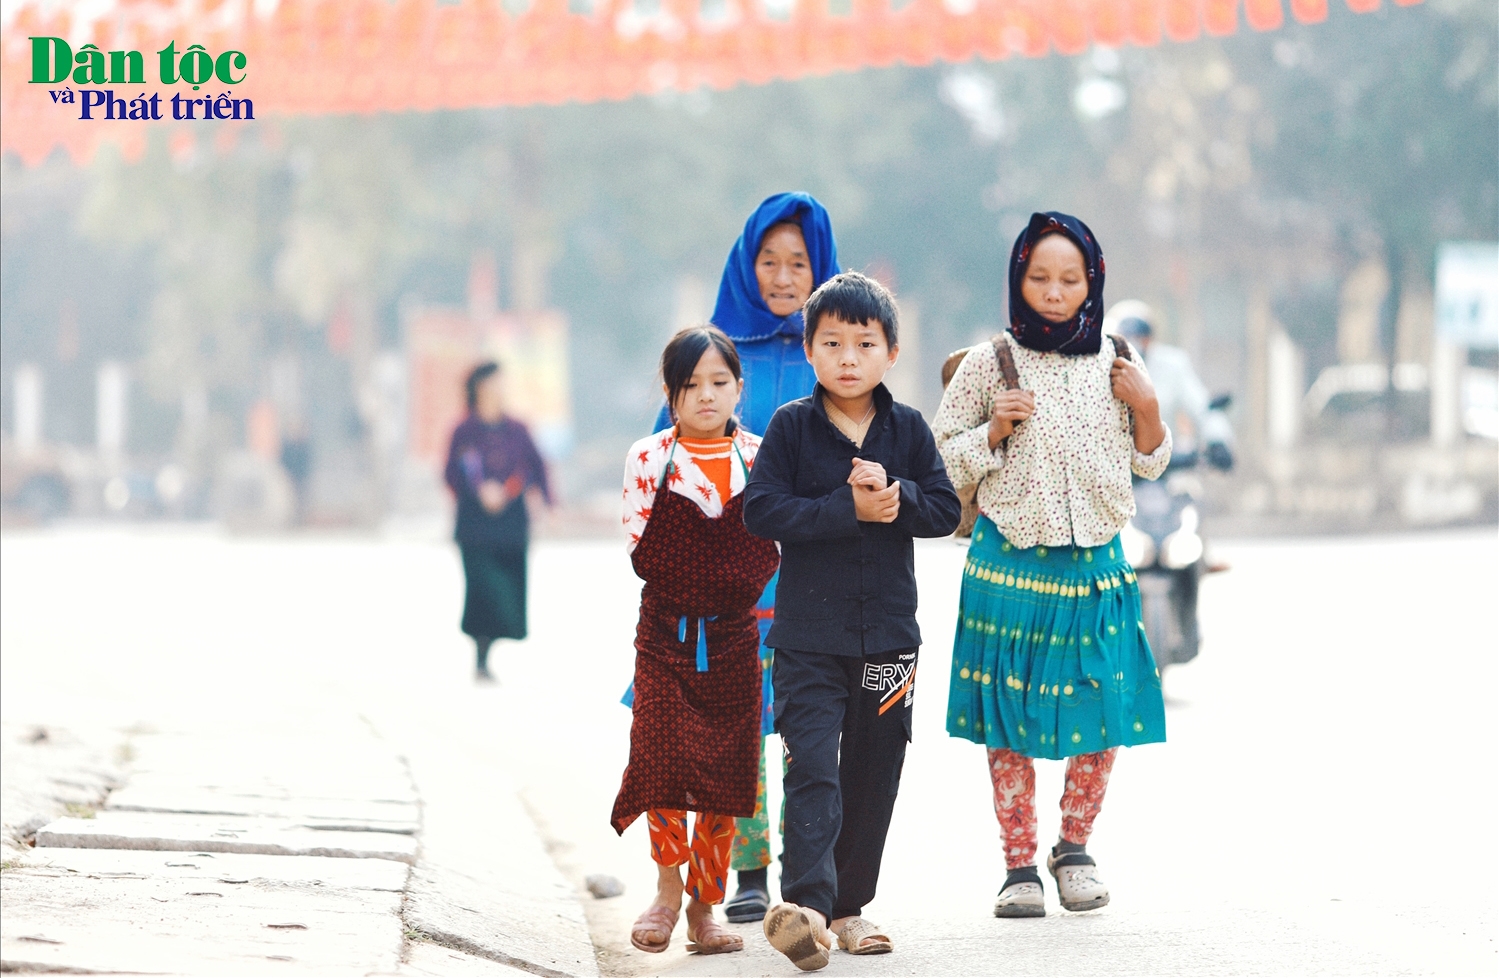 Từ sáng sớm, những bạn nhỏ đã đi theo bà và mẹ của mình xuống trung tâm huyện để ghé thăm chợ Yên Minh